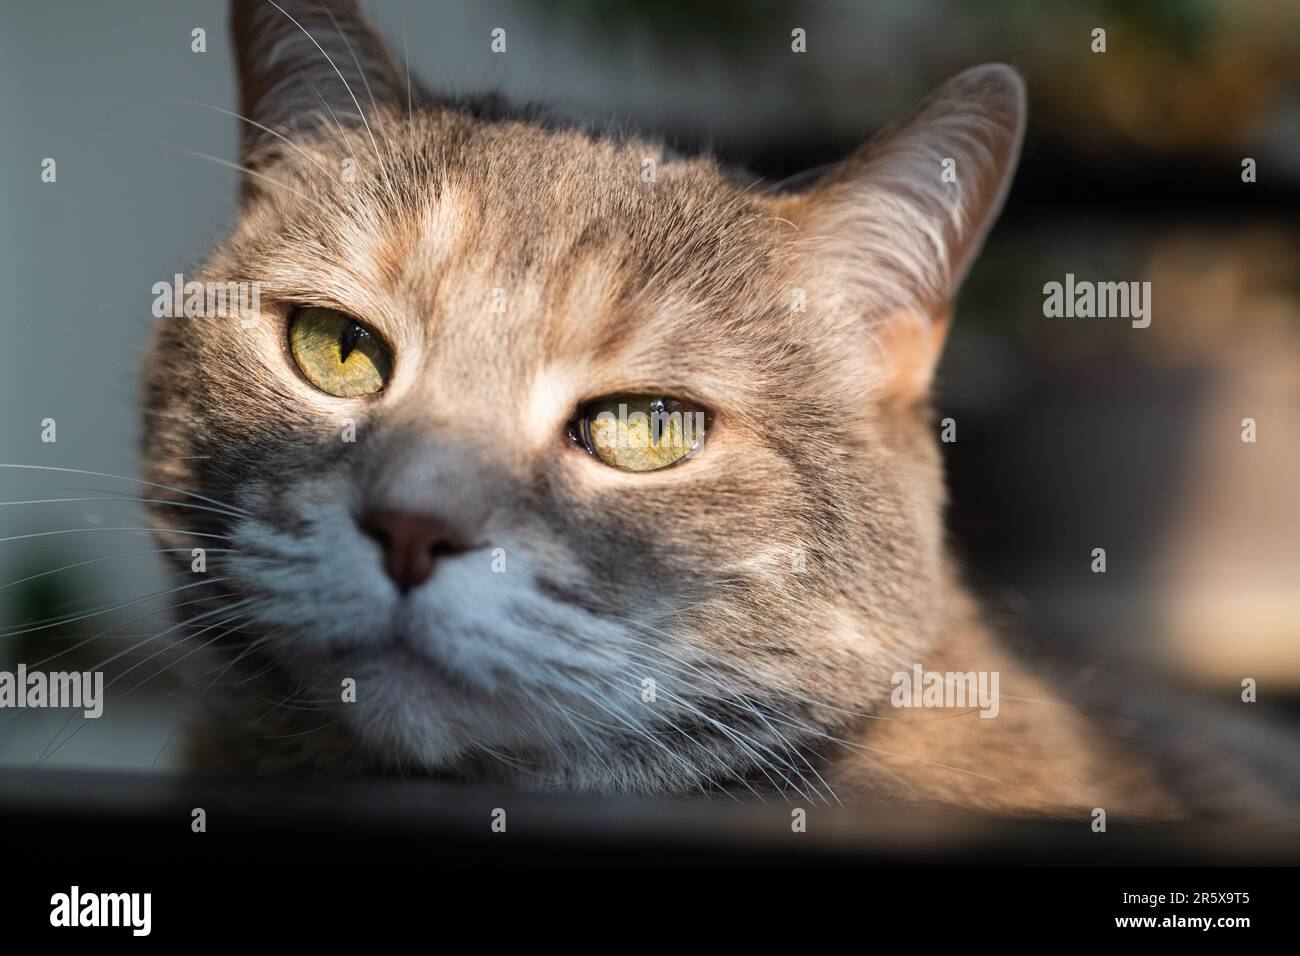 Gros plan photo d'un gris domestique shorthair dilue torbie tabby maison chat avec de longs whiskers et les yeux verts regardant l'appareil photo et de l'escouction Banque D'Images